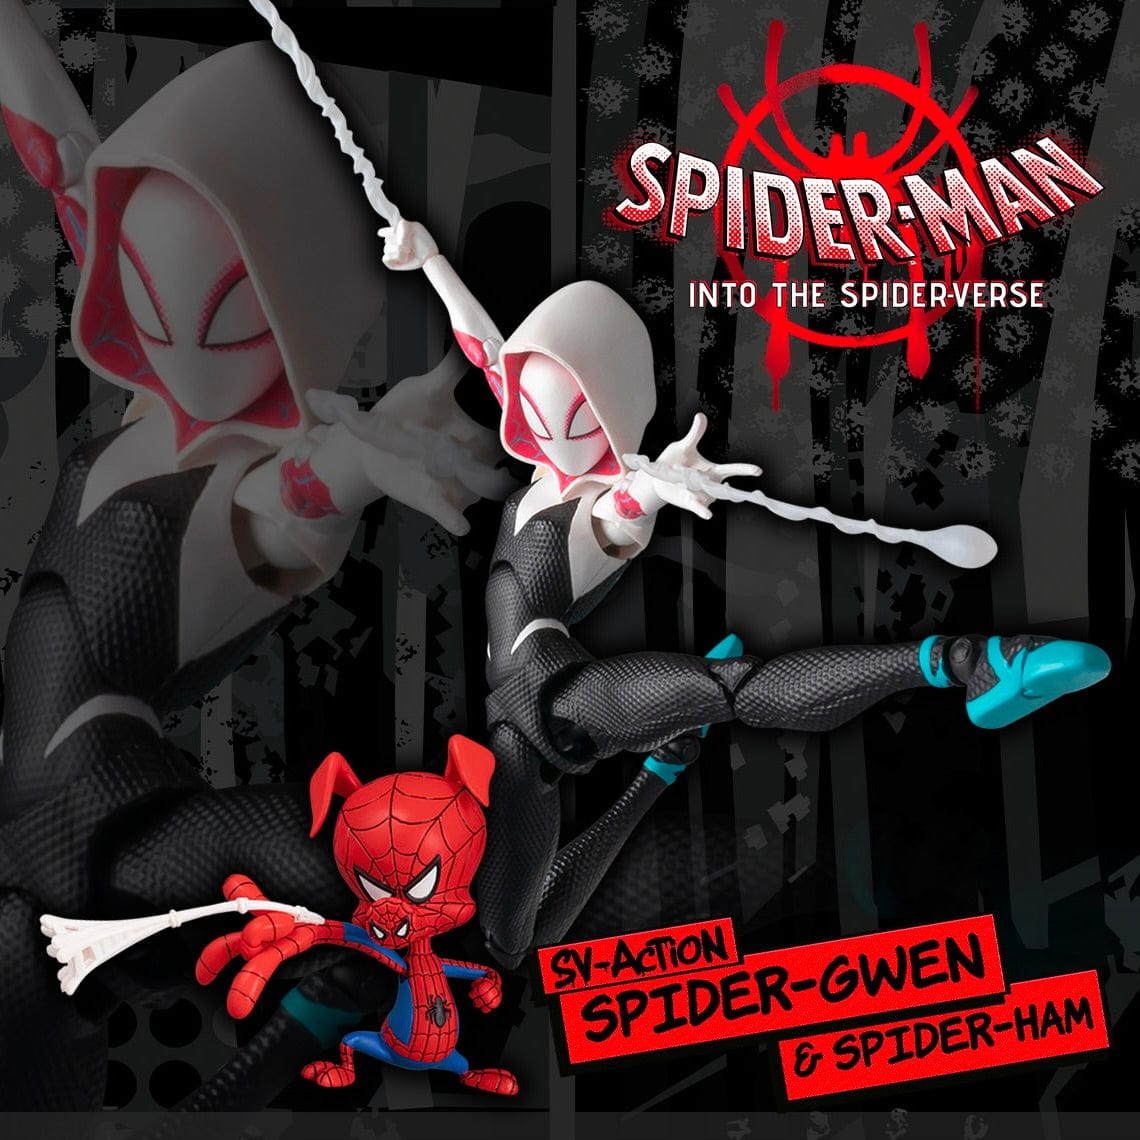 SV-Action Spider-Man: Into the Spider-Verse Spider-Gwen & Spider-Ham Action Figure Set